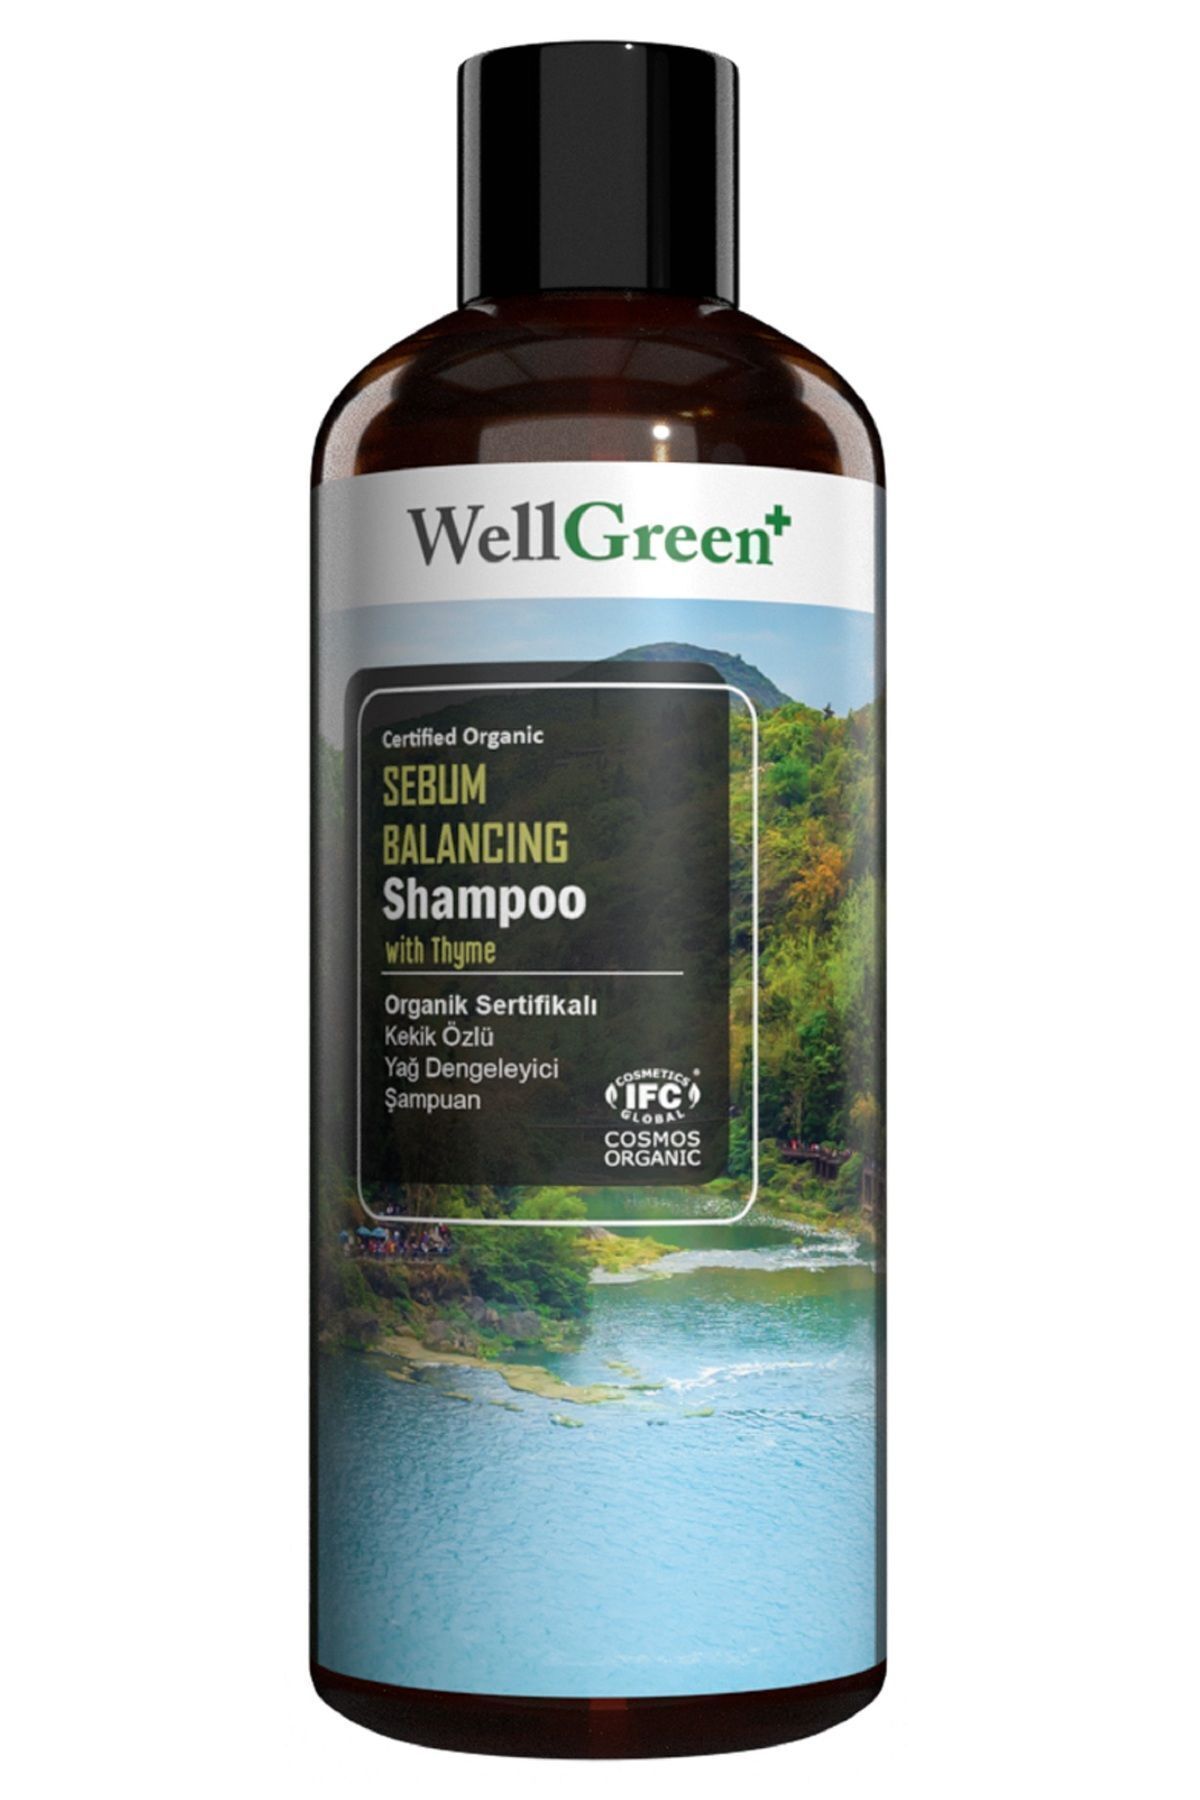 WellGreen Organik Sertifikalı Kekik Özlü Yağ Dengeleyici Şampuan - 400ml